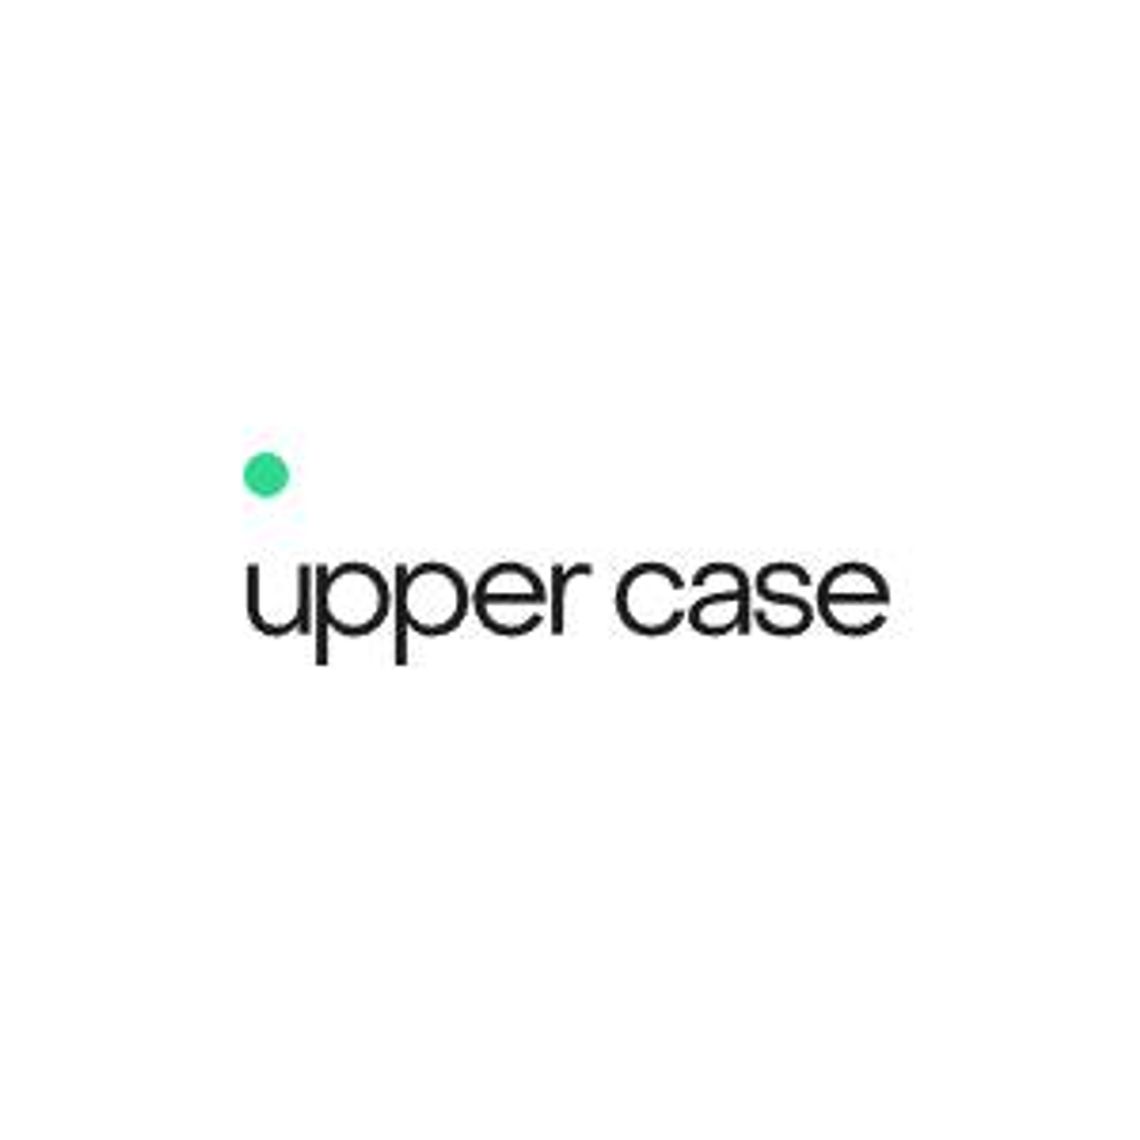 Pomoc prawna - upper case